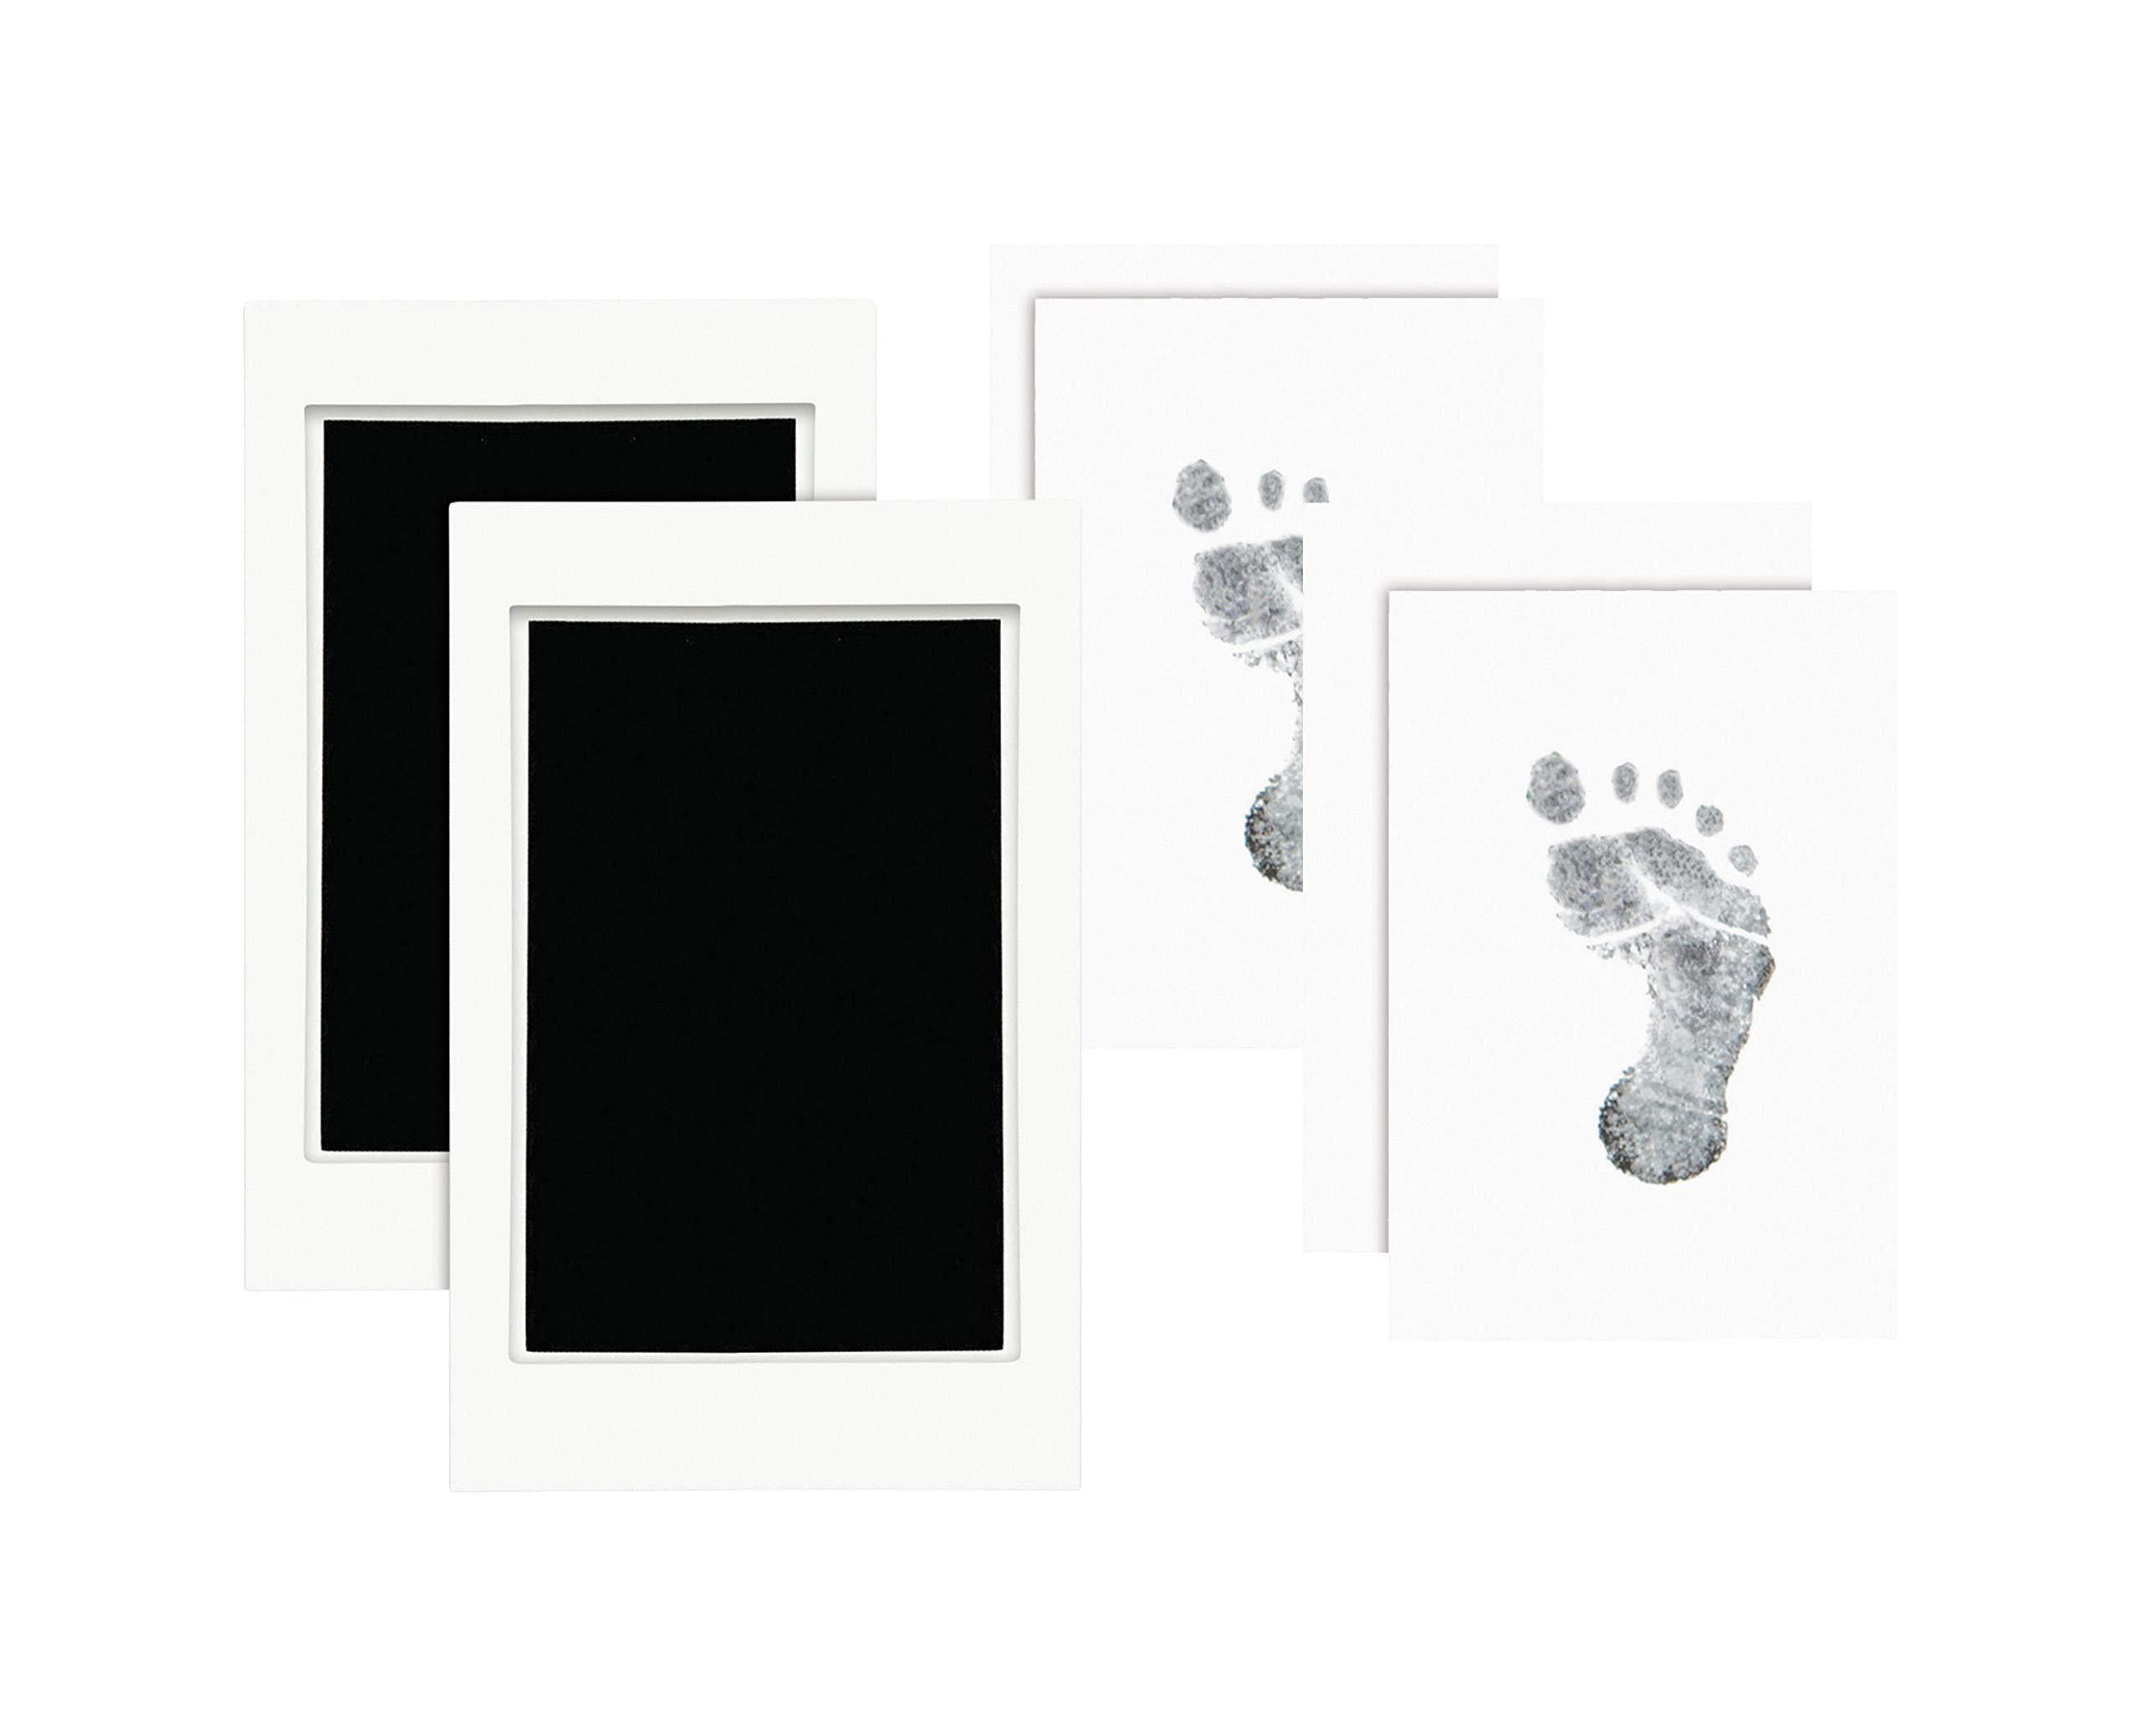 Baby Footprint Ink